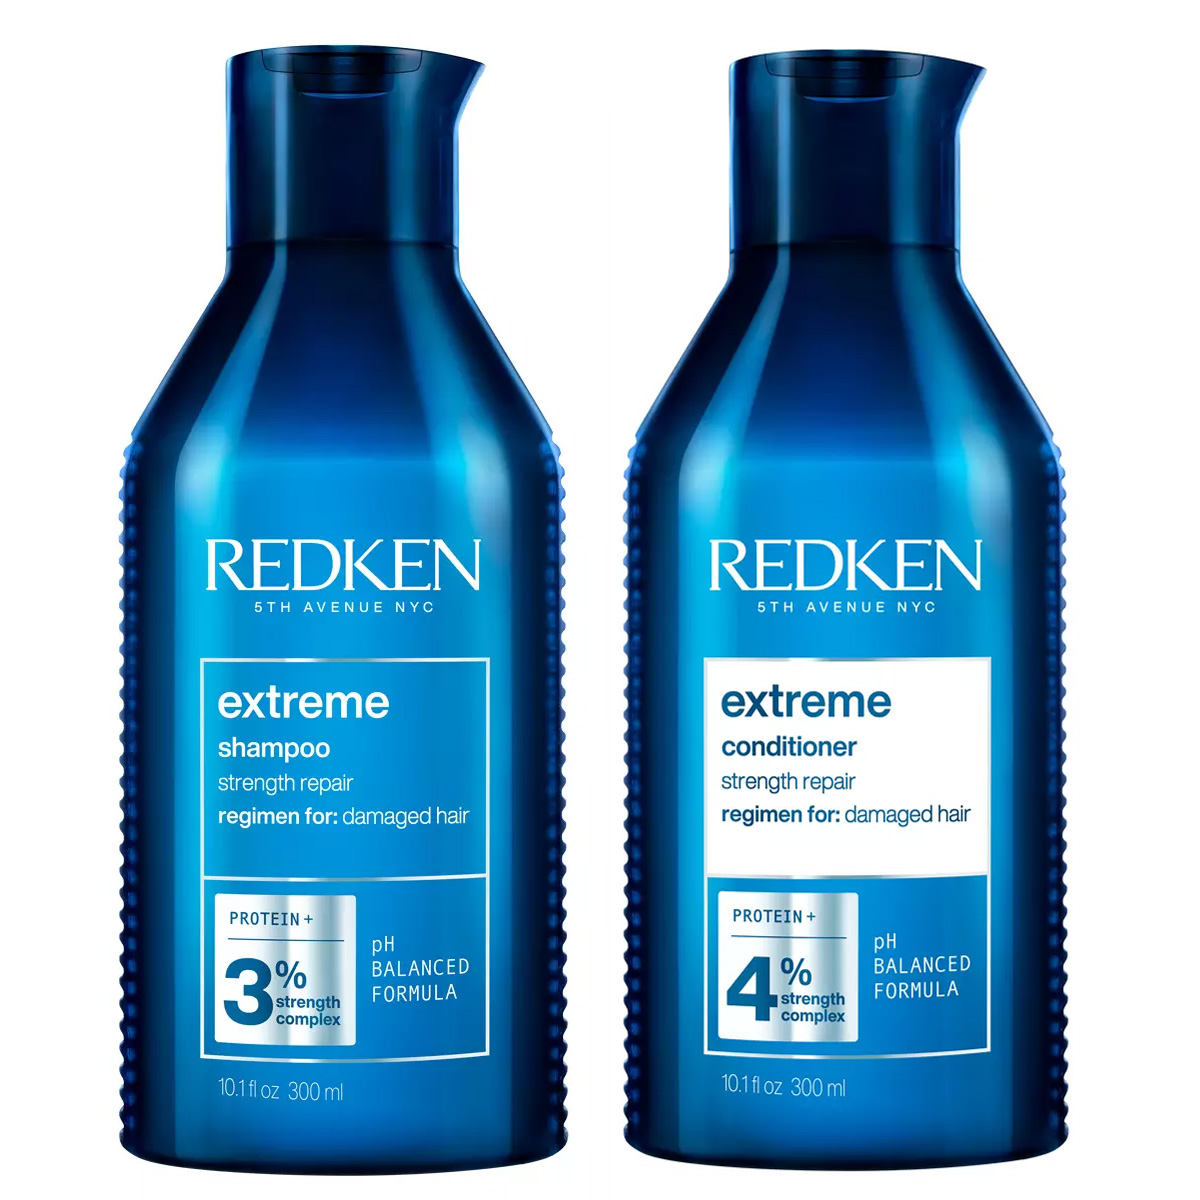 Купить Redken Набор: Восстанавливающий шампунь для ослабленных и поврежденных волос, 300 мл + Восстанавливающий кондиционер для ослабленных и поврежденных волос, 300 мл (Redken, Уход за волосами), США